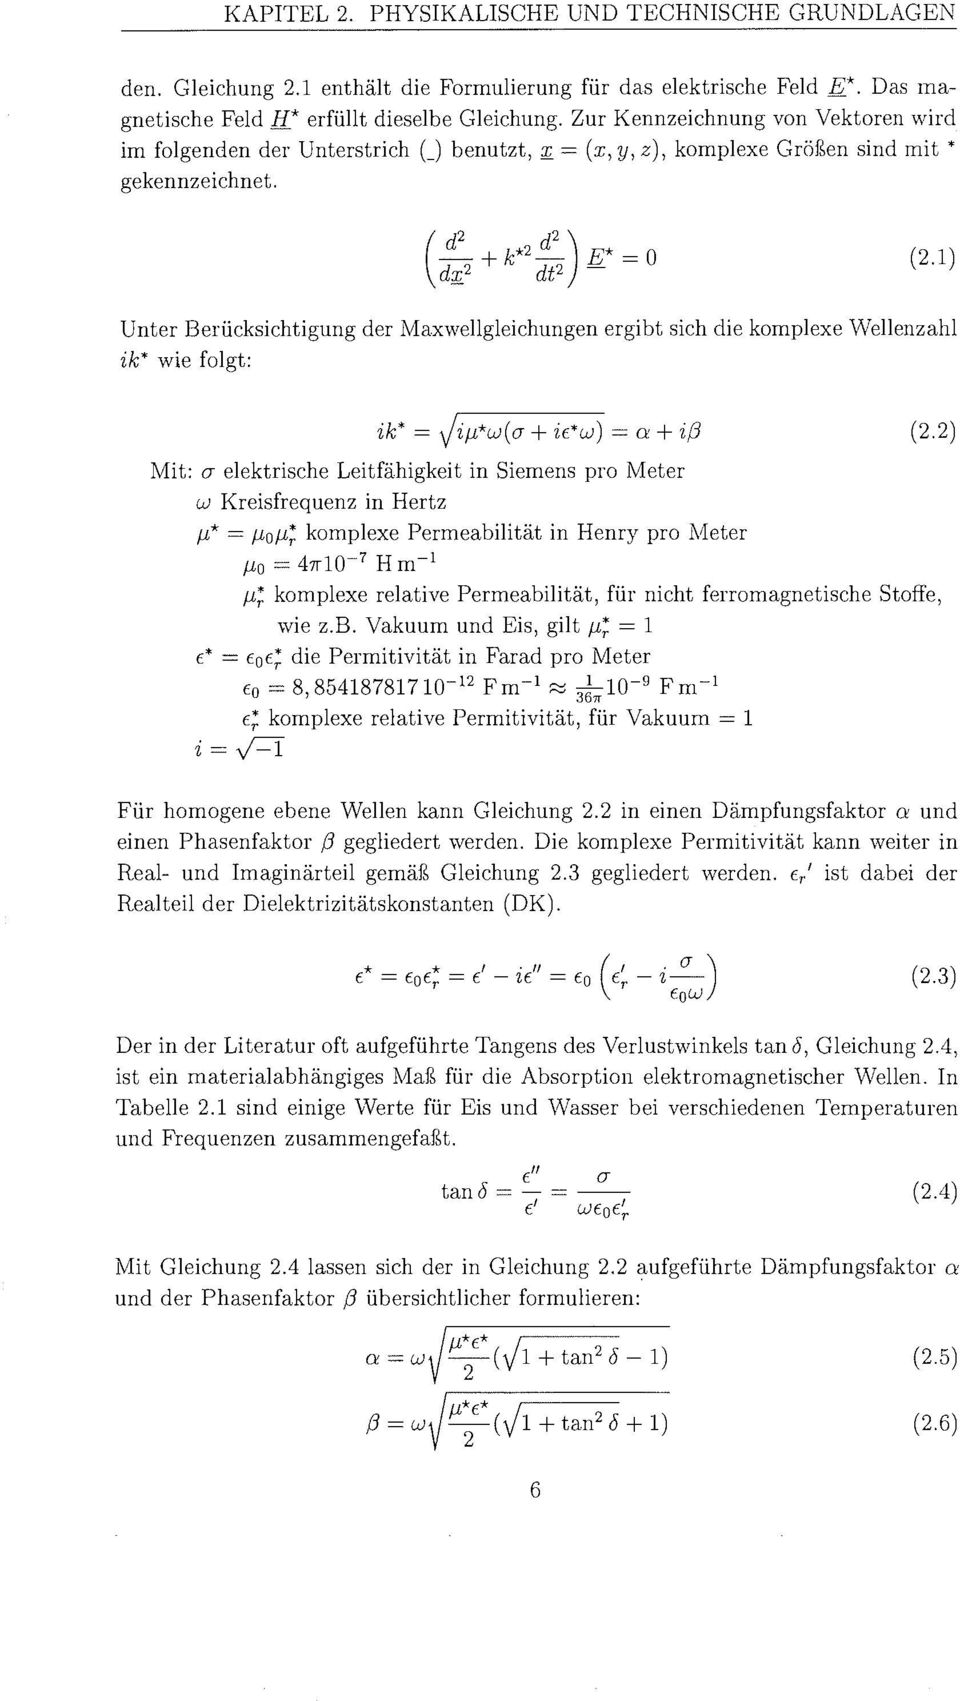 Unter BerÃ¼cksichtigun der Maxwellgleichungen ergibt sich die komplexe Wellenzahl ik* wie folgt: Mit: o- elektrische LeitfÃ higkein Siemens pro Meter W Kreisfrequenz in Hertz p* = poâ >omplex